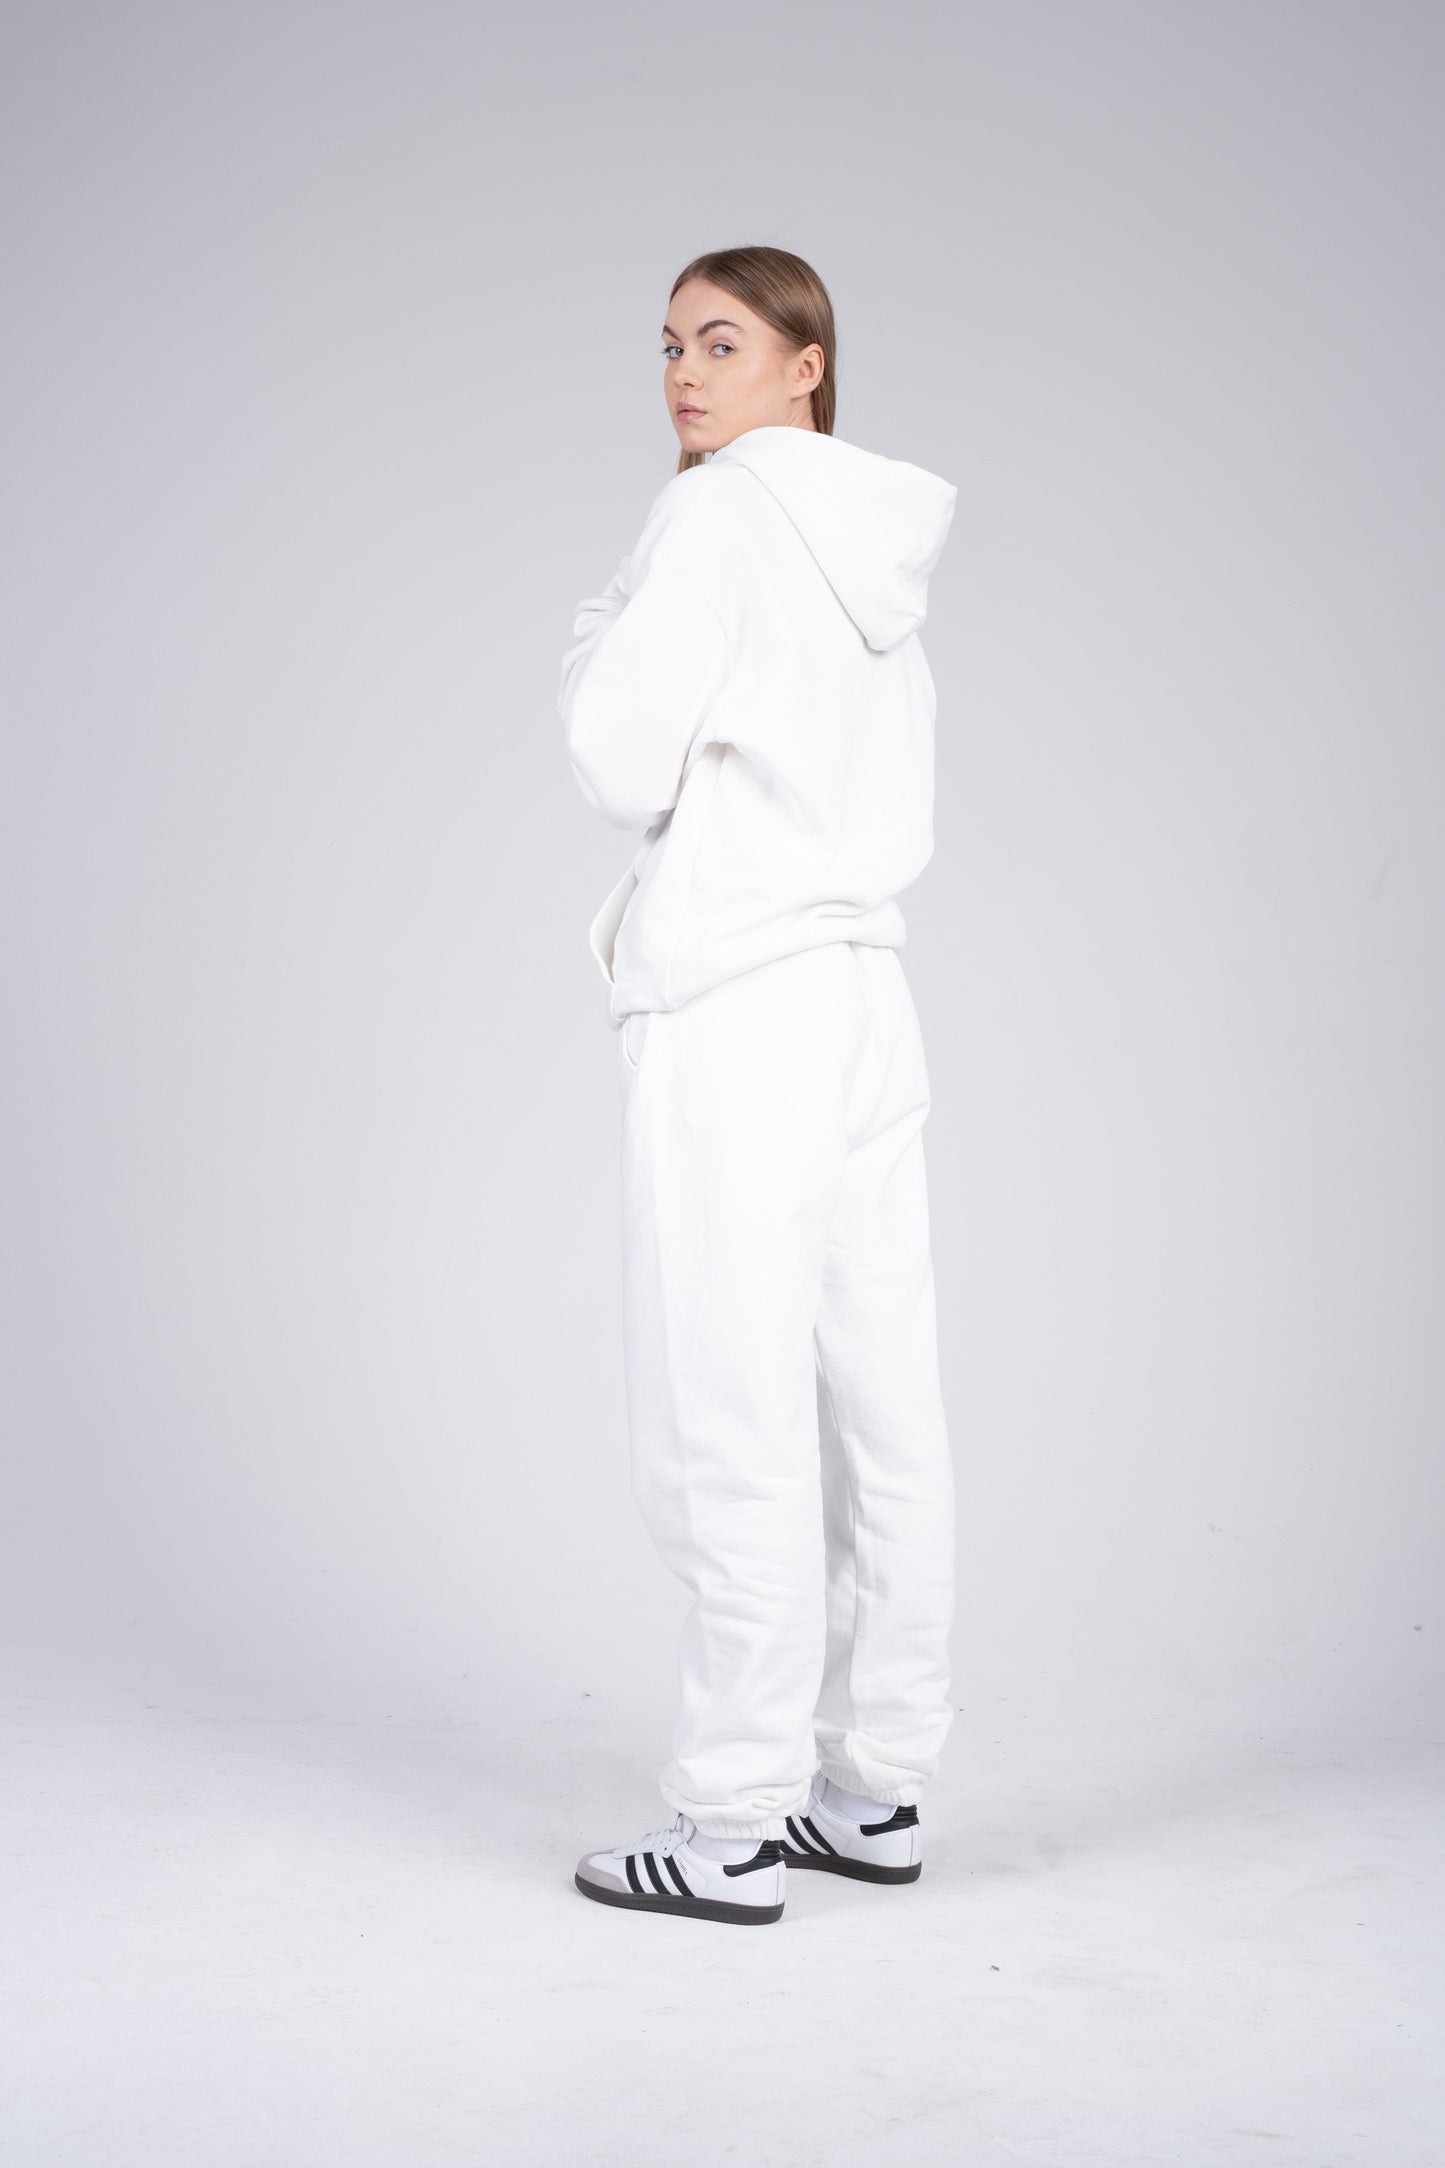 Sweatsuit in white for women